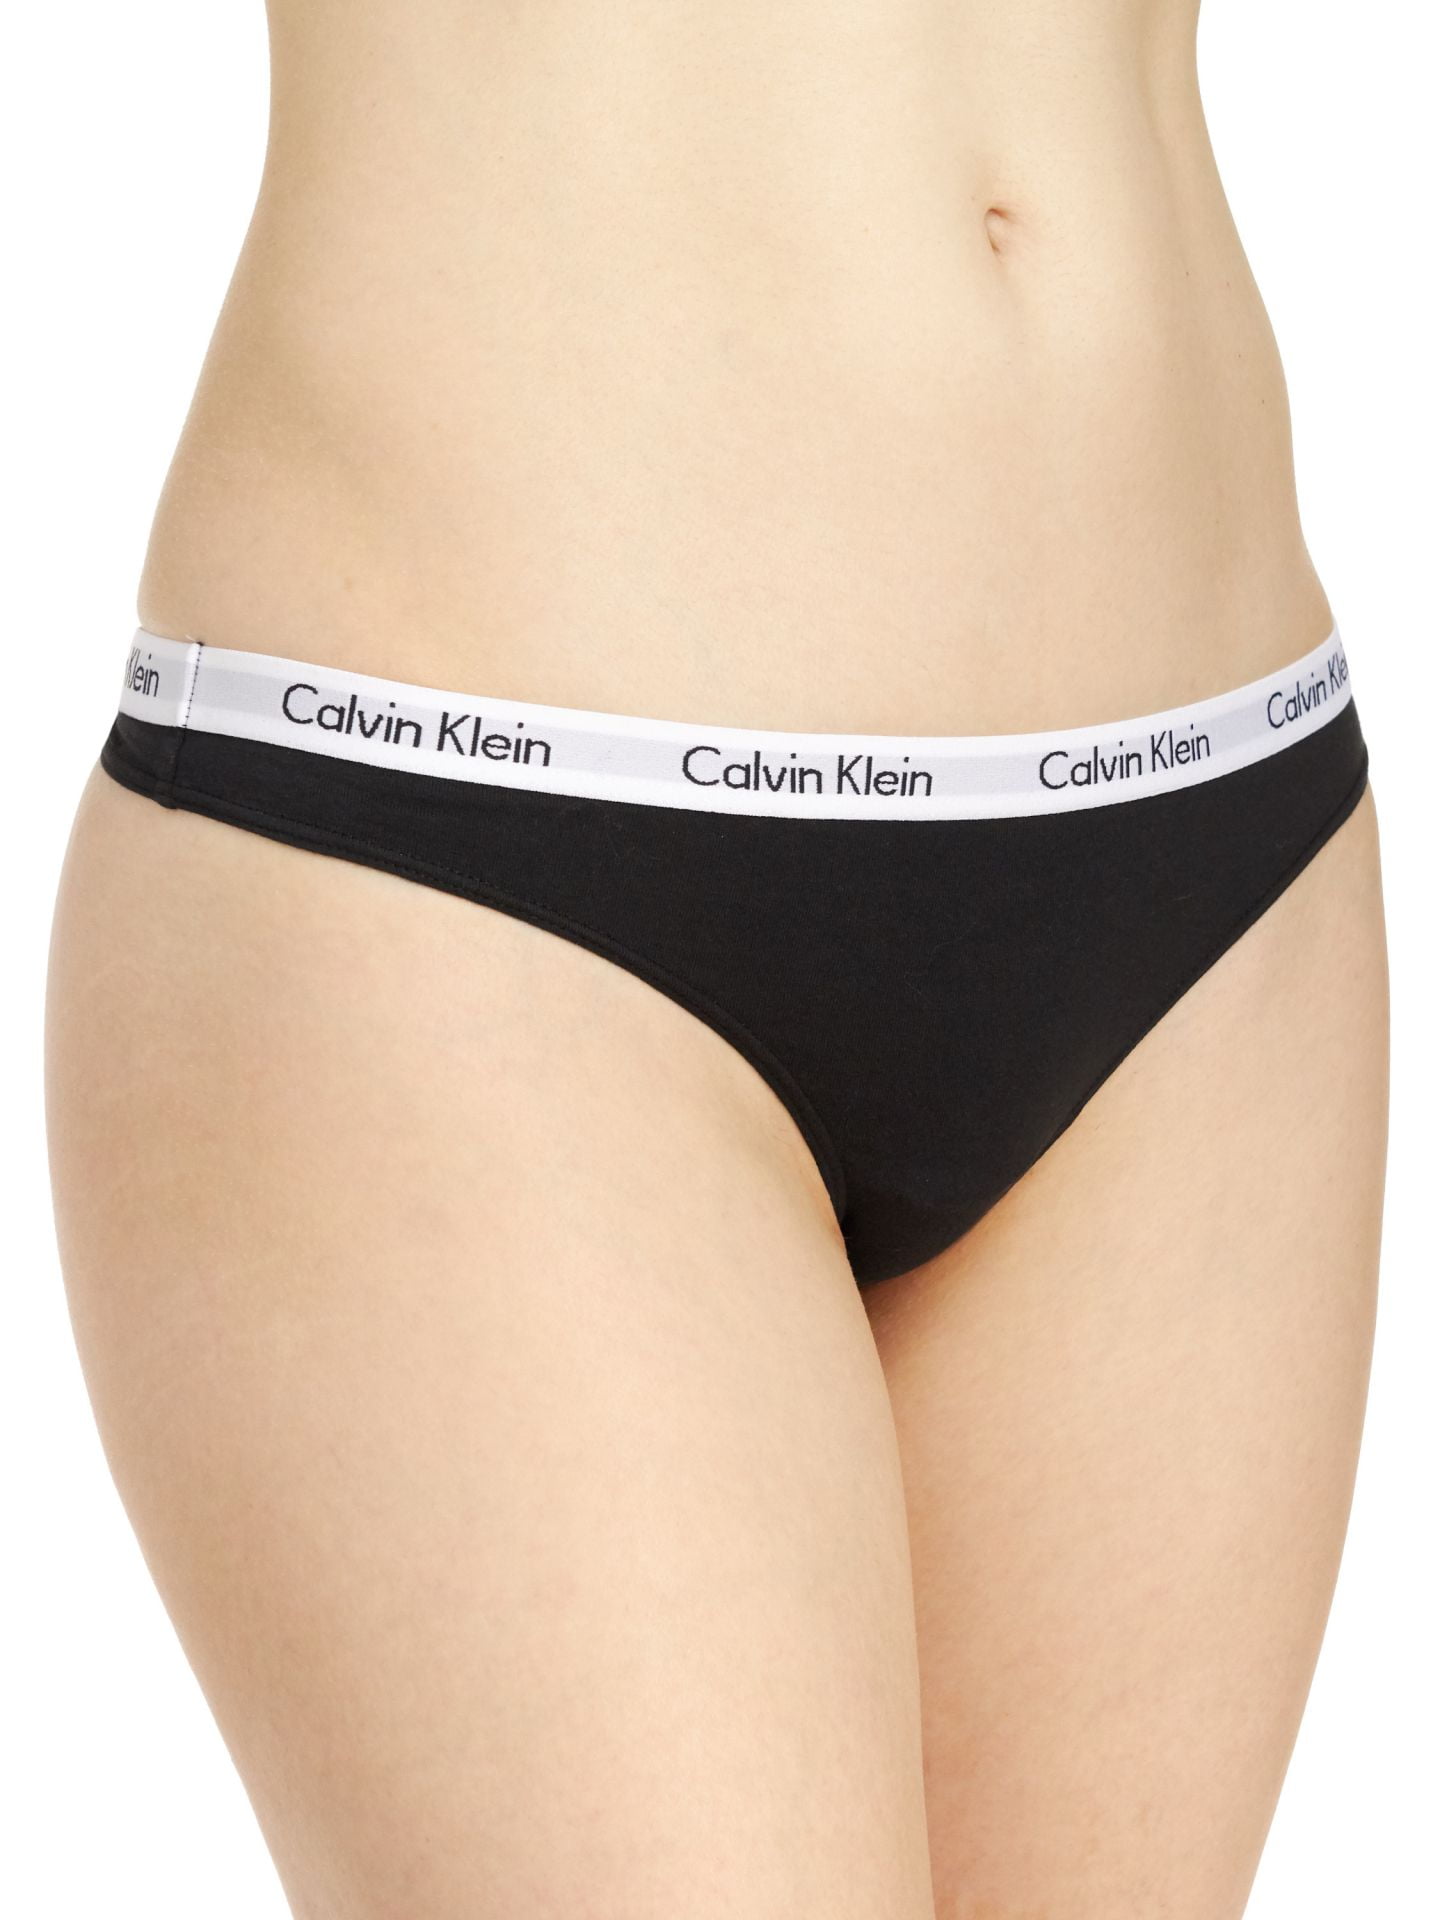 Calvin Klein Women\'s Large Carousel Thong Pack, - Black/Grey/White, 3